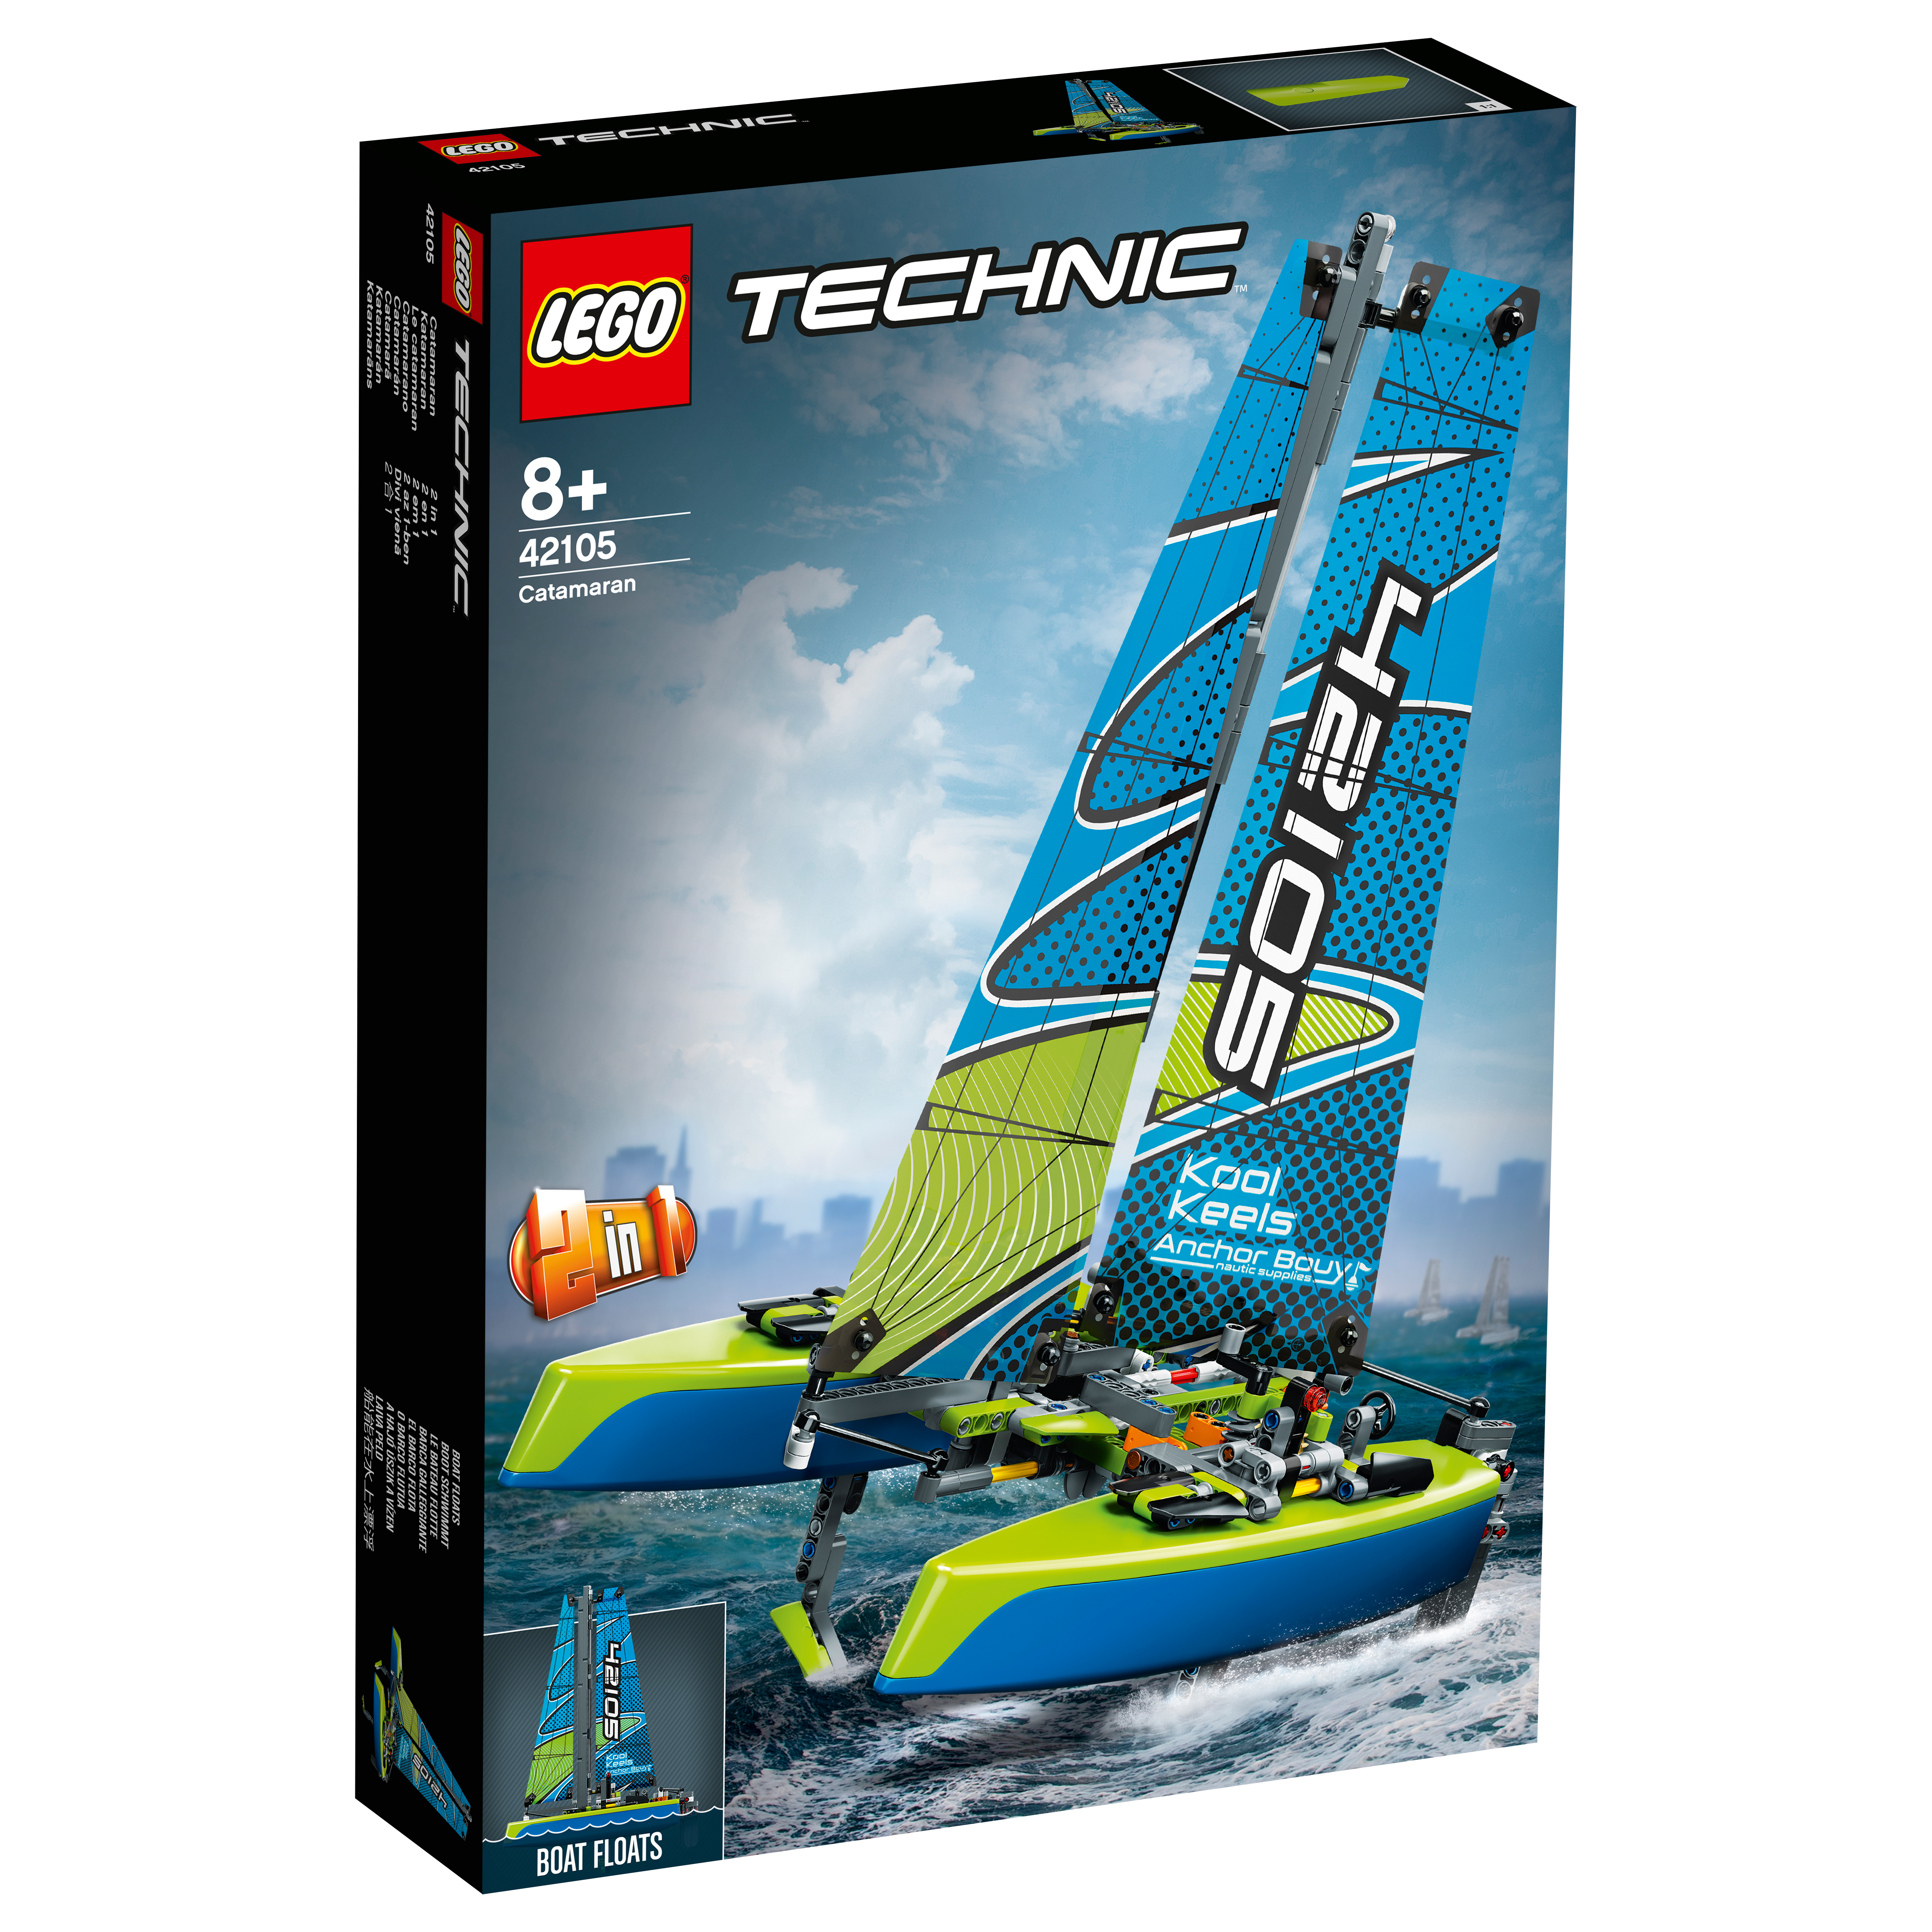 LEGO TECHNIC 42105 CATAMARAN